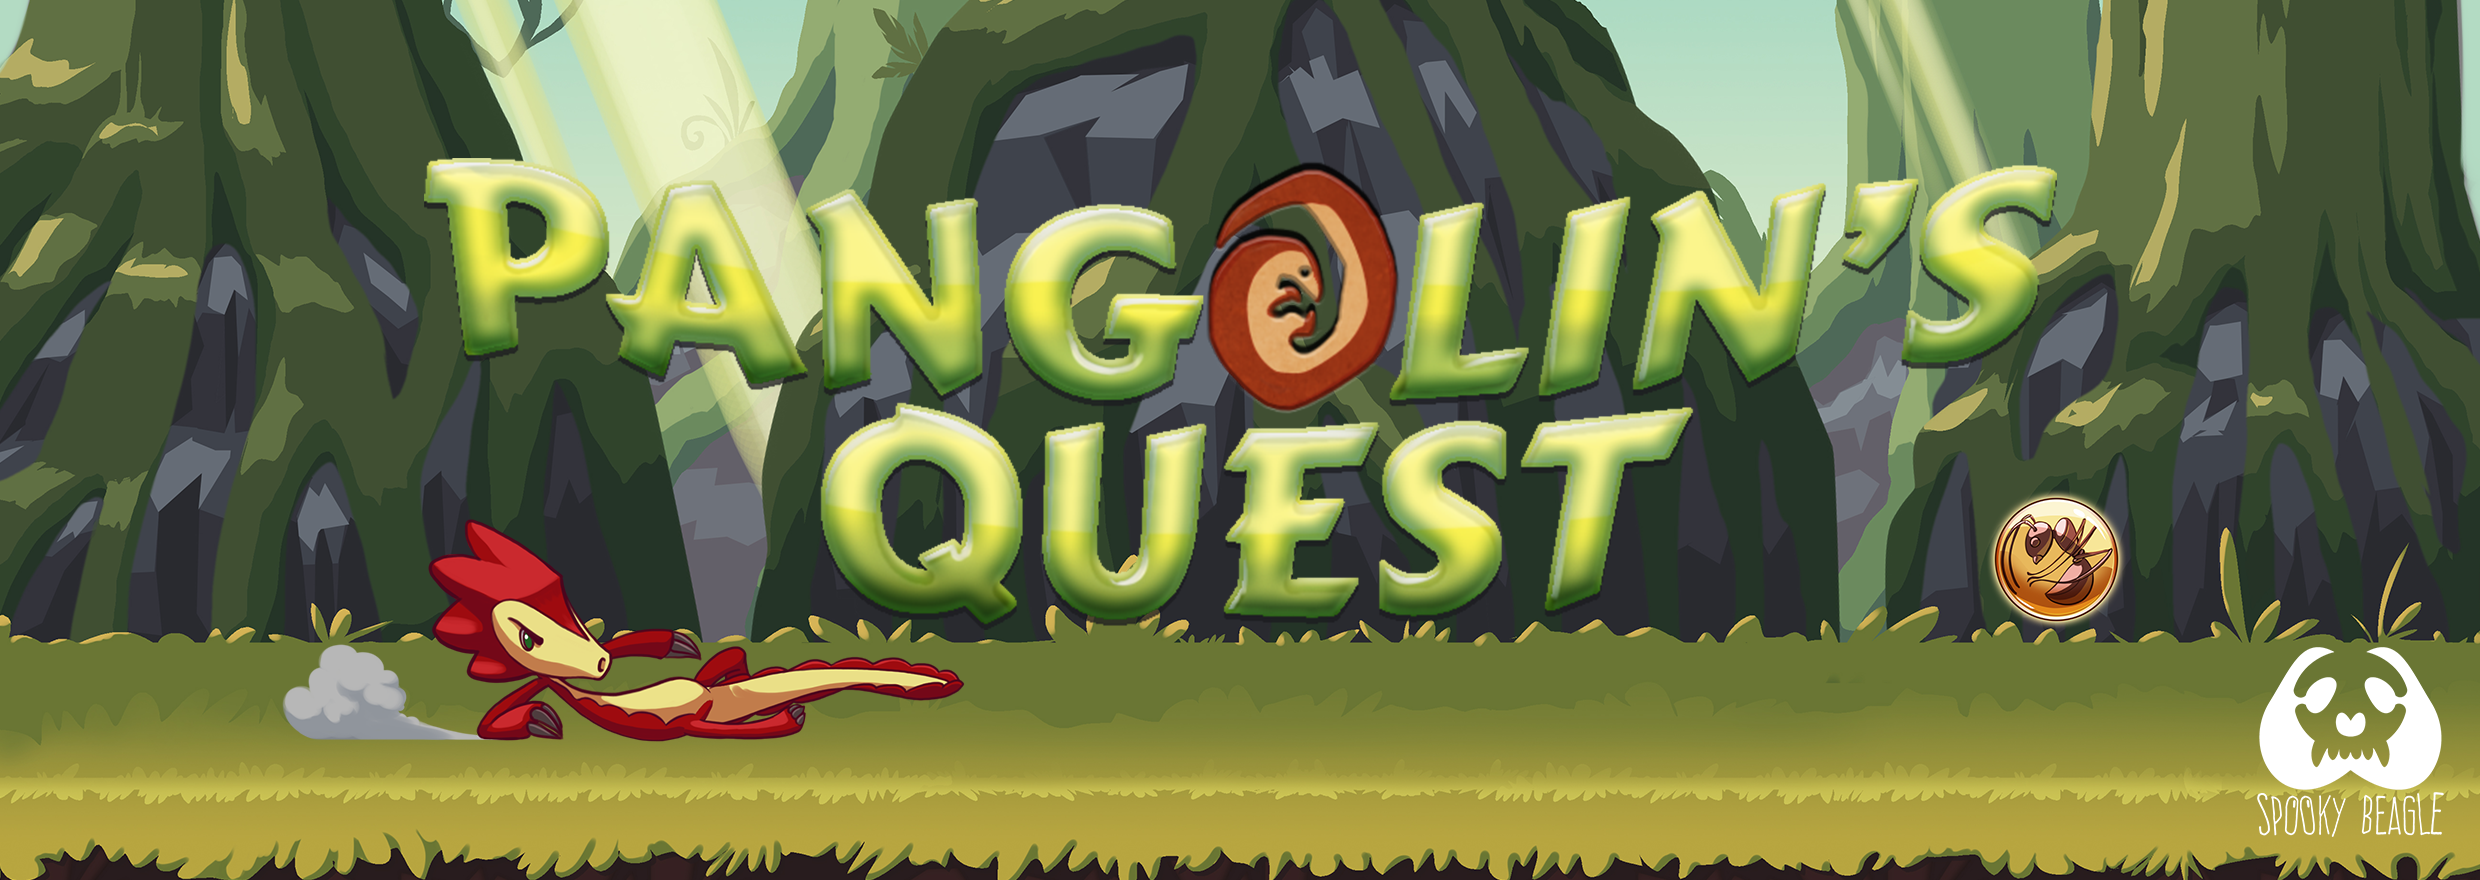 Pangolin's Quest